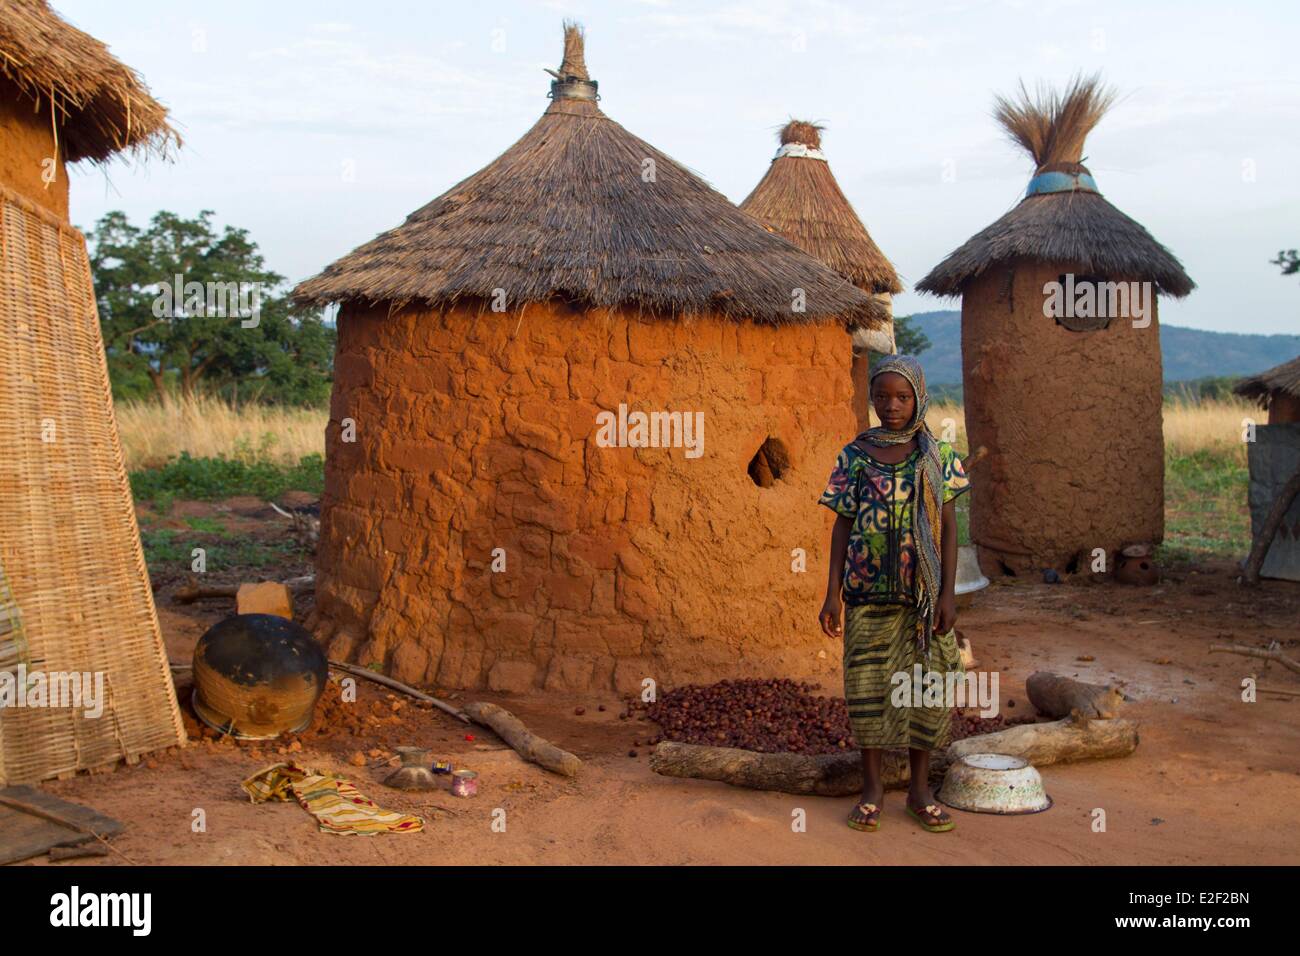 Le Burkina Faso, dans la région de village sénoufo Banque D'Images